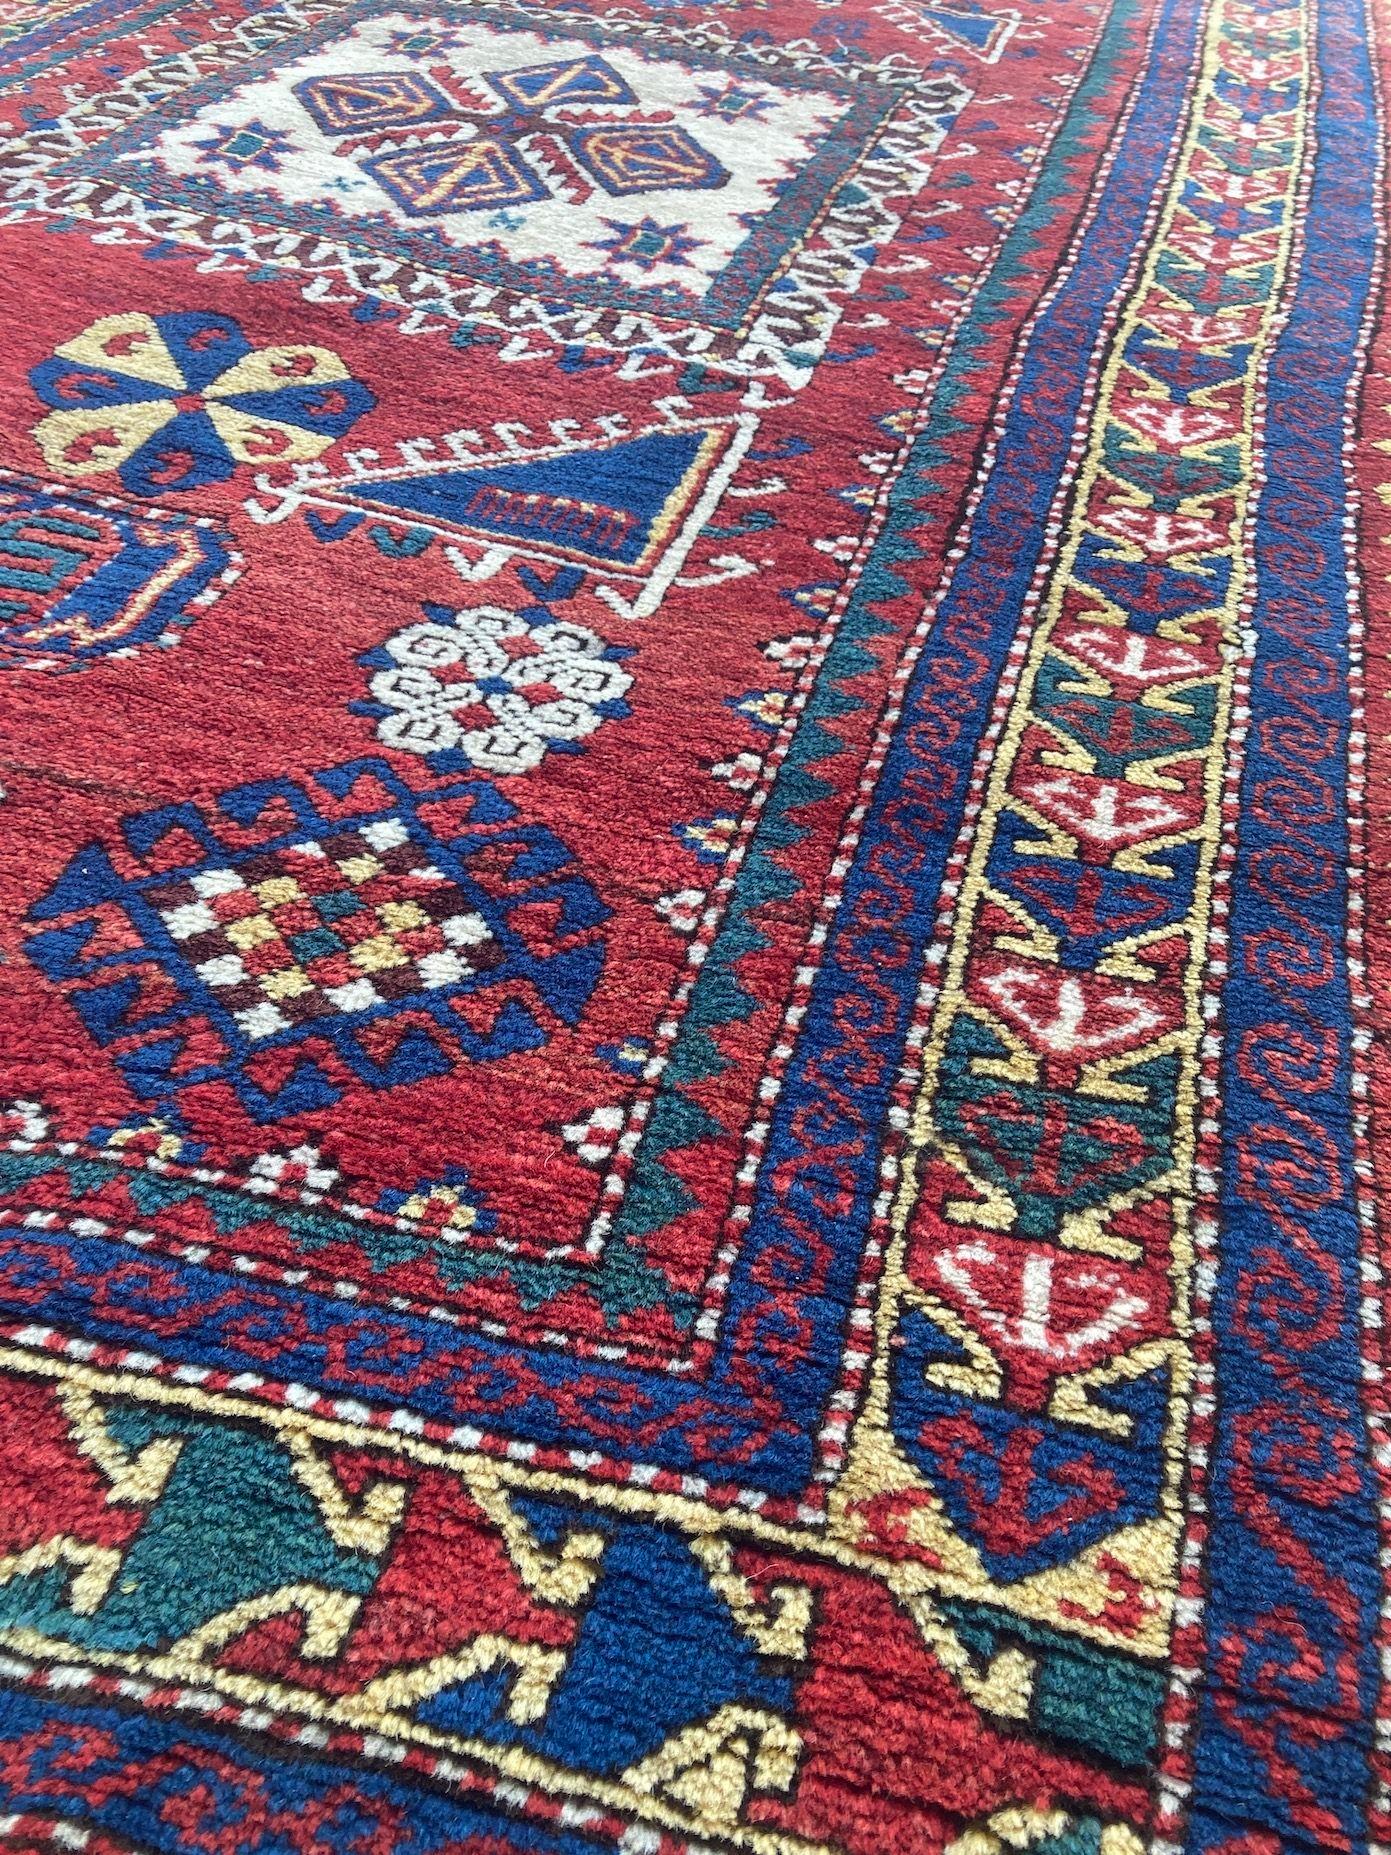 Antique Caucasian Fachralo Kazak Prayer Rug 2.48m x 1.30m For Sale 3